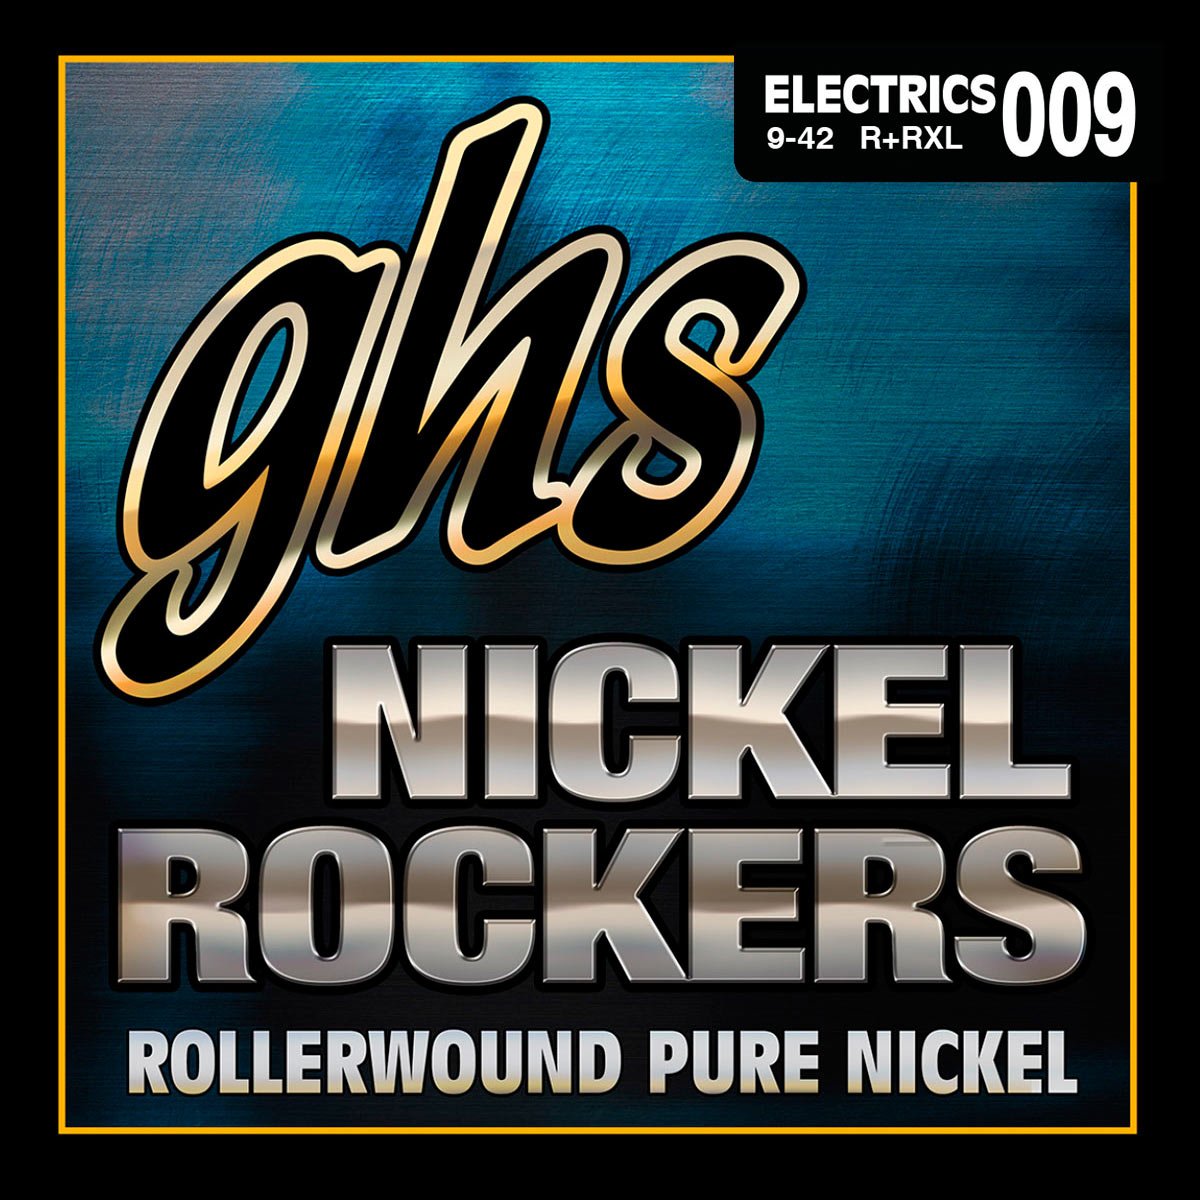 GHS Electric Guitar Nickel Rockers